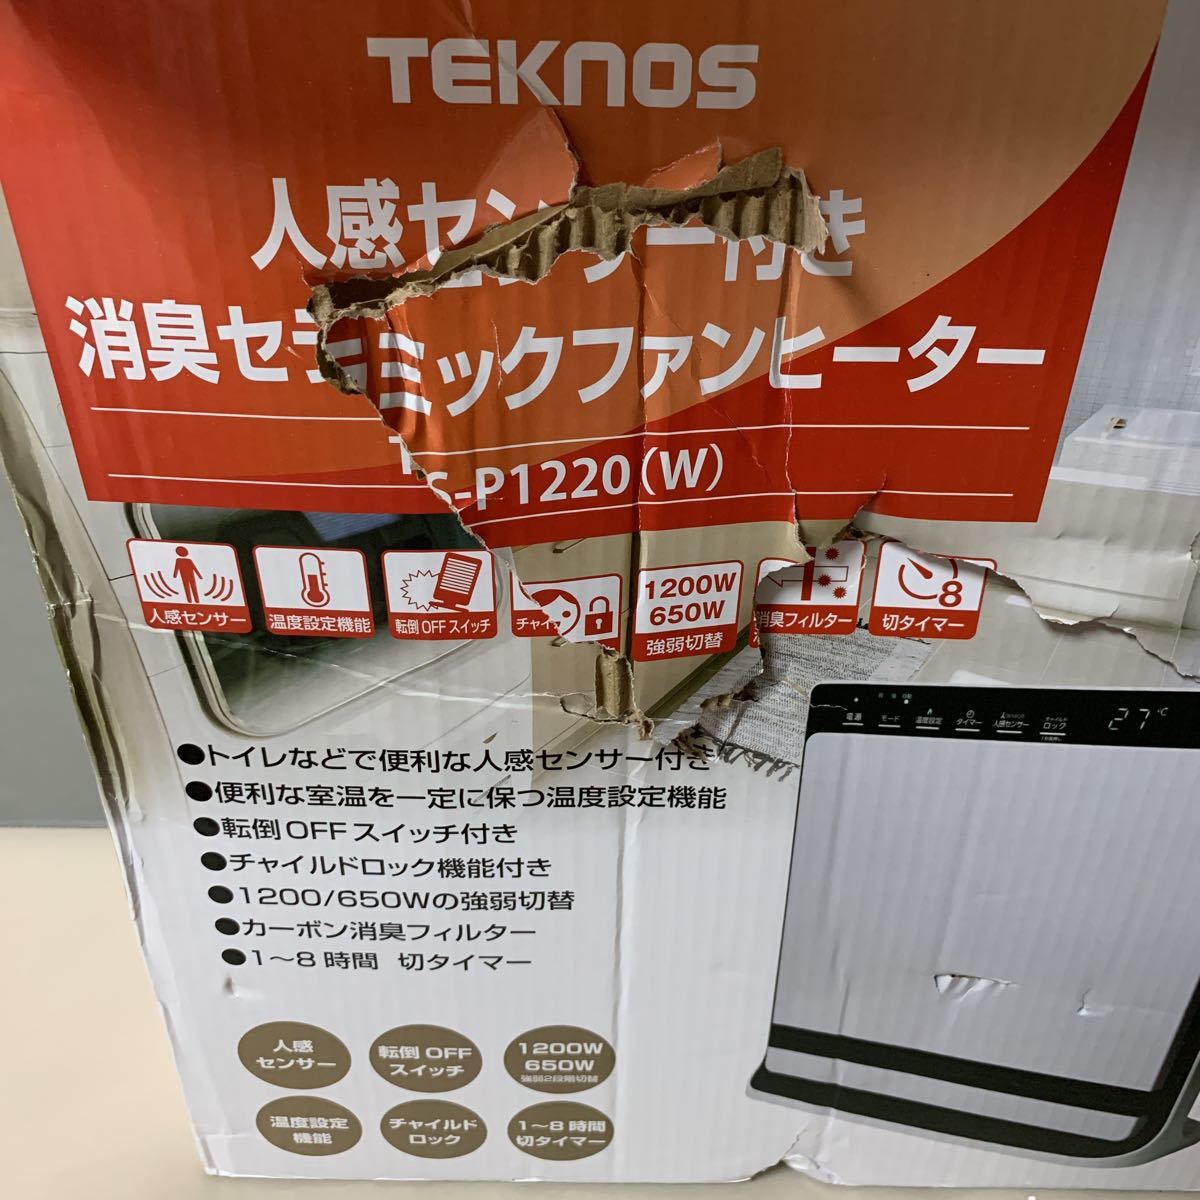 TEKNOS 人感センサー 消臭セラミックファンヒーター パネル型 TS-P1220